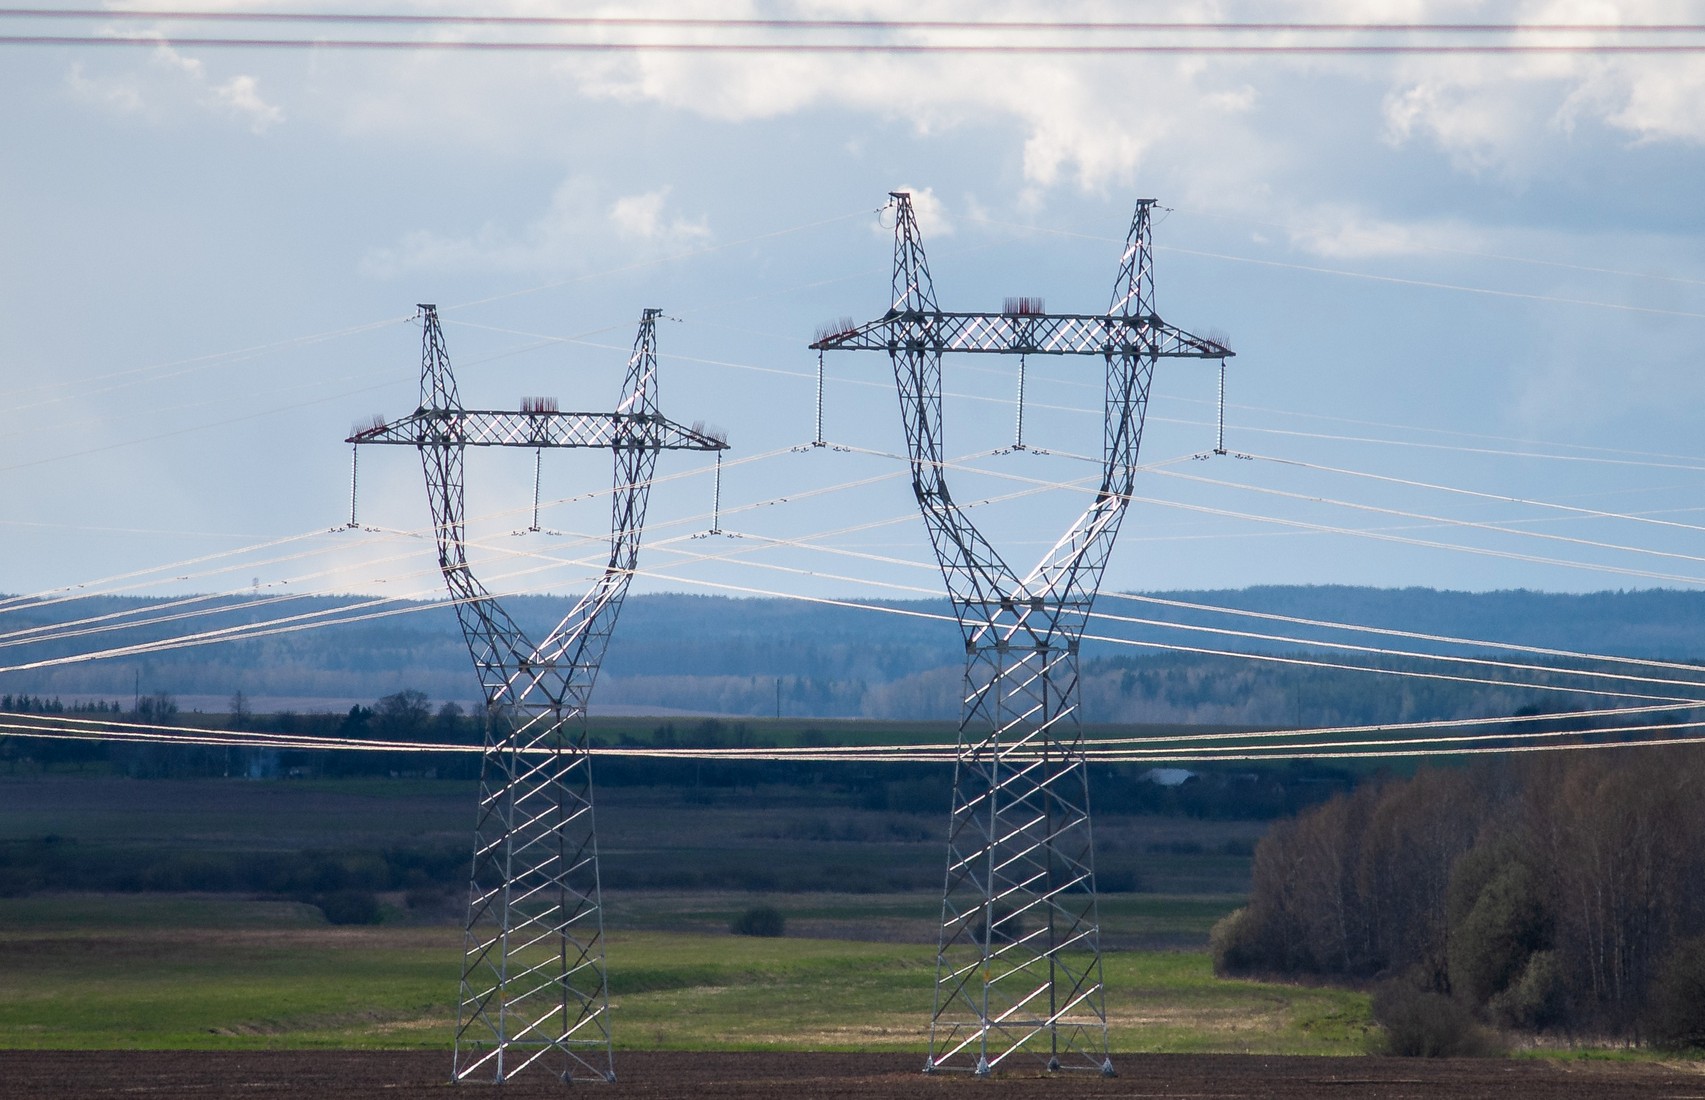 Беларусь поставит Украине 500 МВт электроэнергии по договору об аварийной помощи